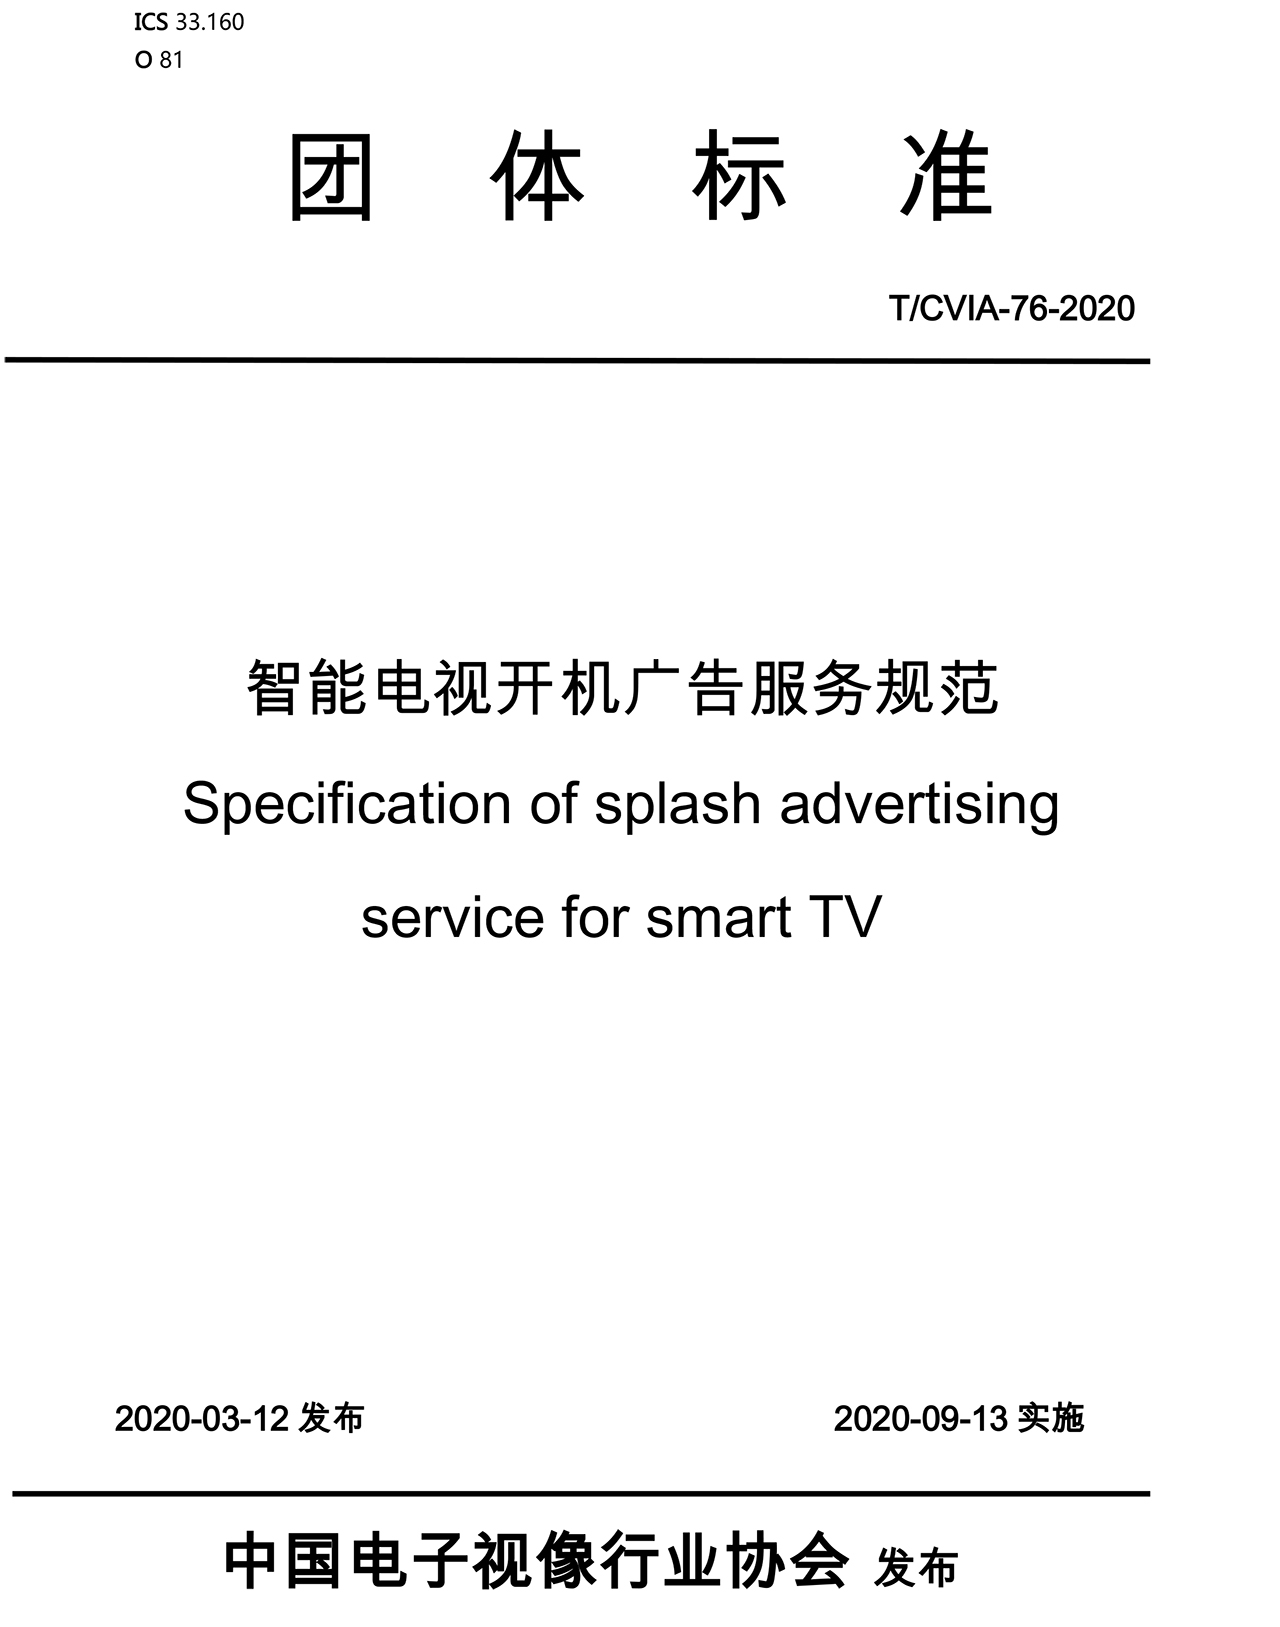 智能电视开机广告服务规范发布，对开机广告提出明确要求